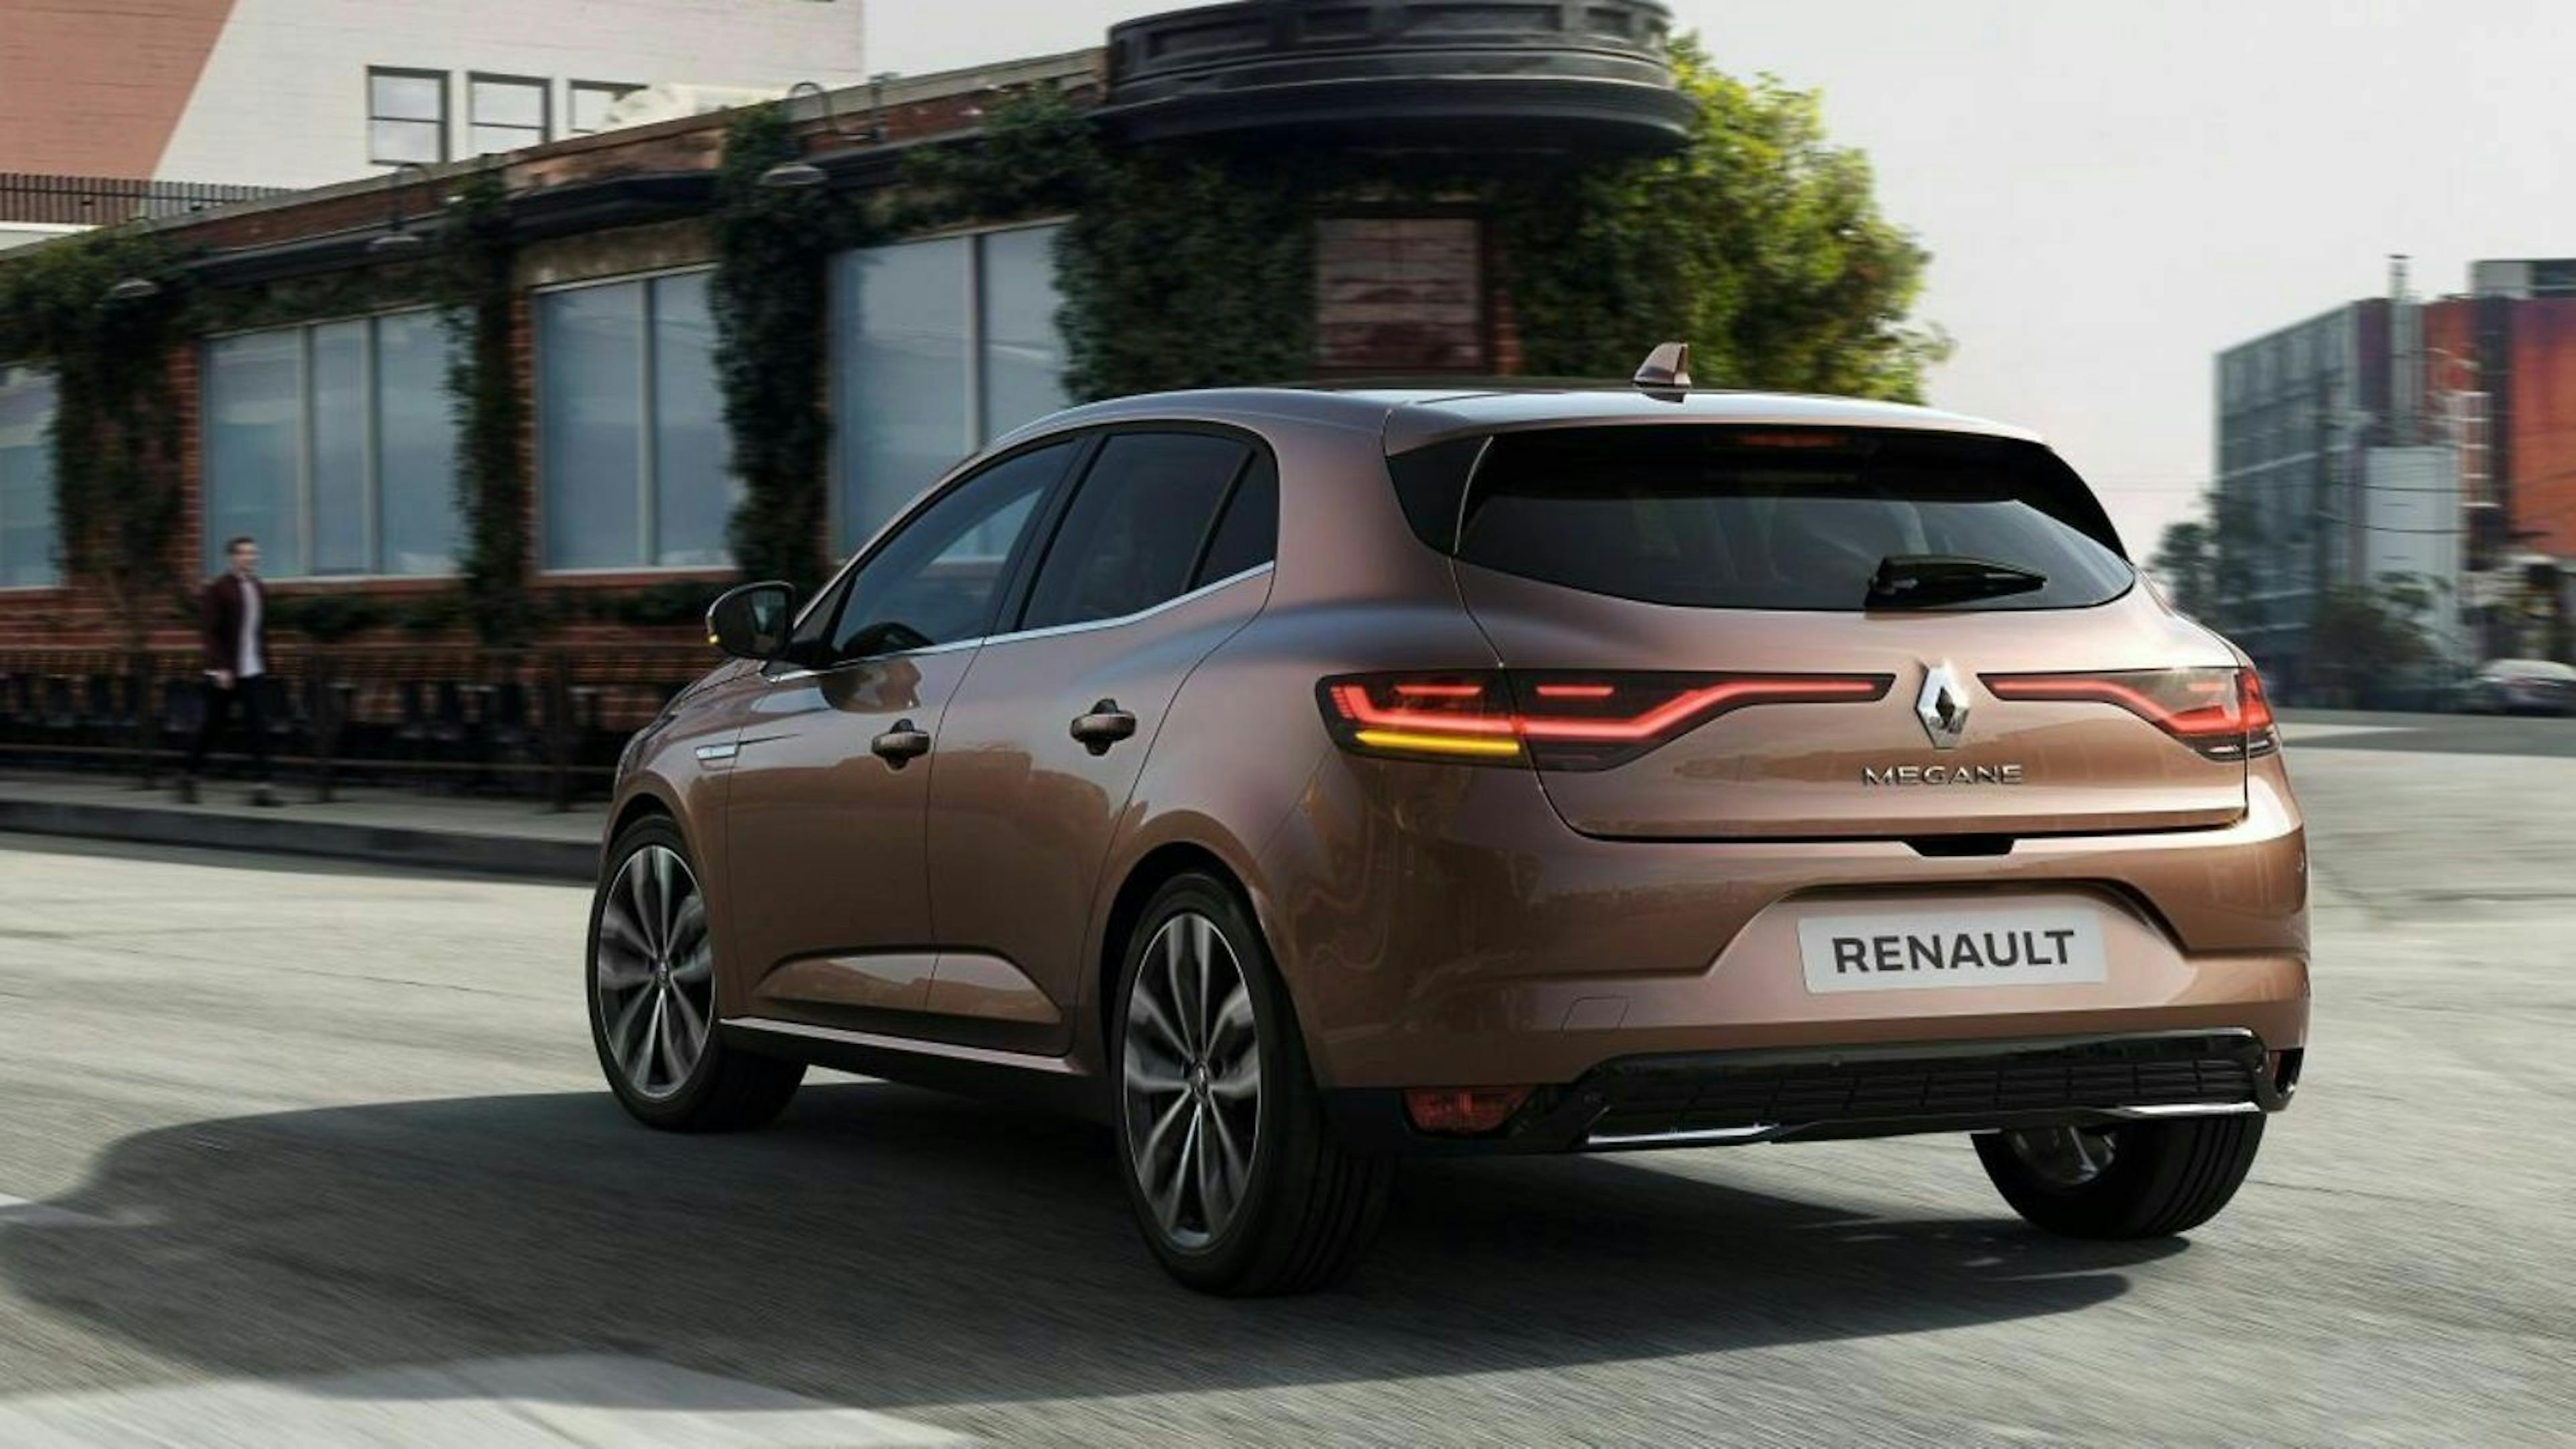 Renault Megane FL 2020 in der Heckansicht